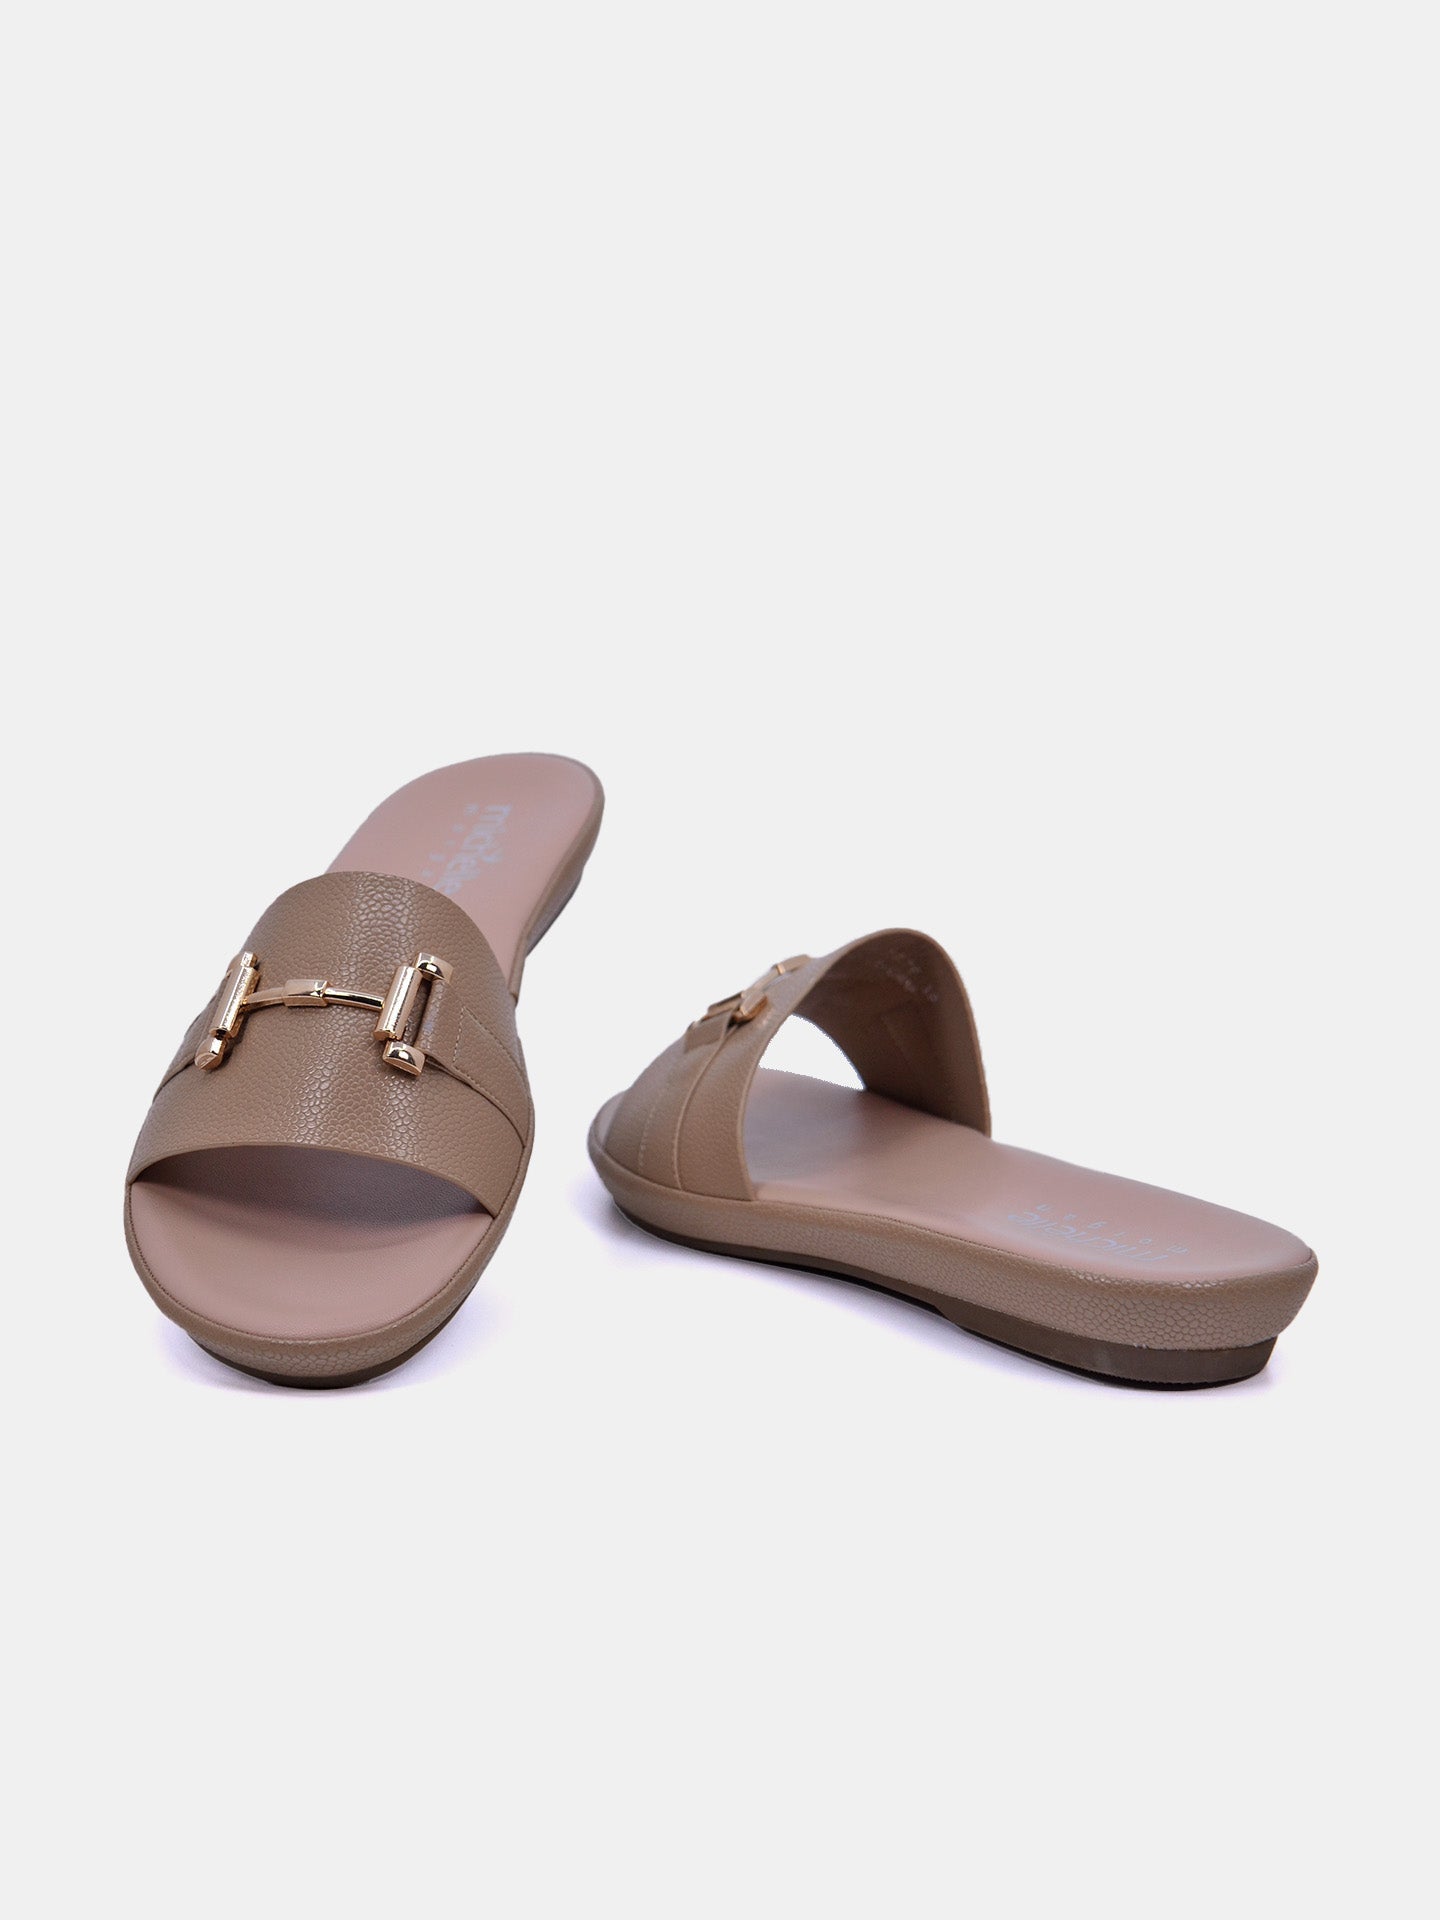 Michelle Morgan 114RC676 Women's Flat Sandals #color_Brown